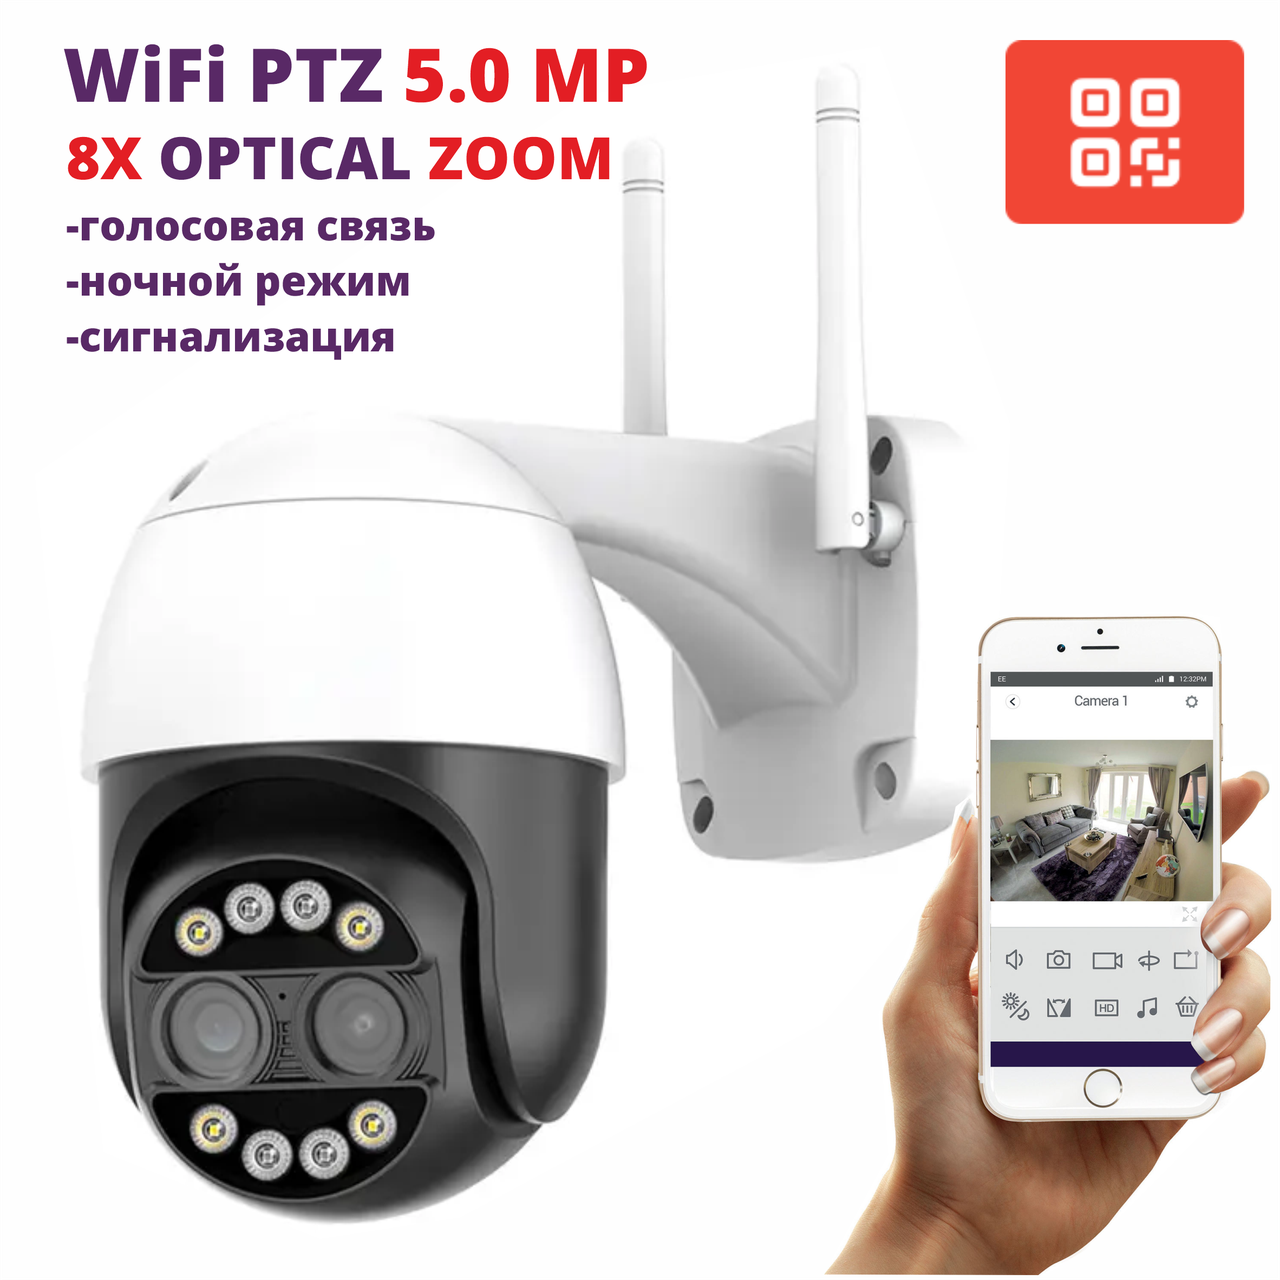 WiFi Камера уличная PTZ IP видеонаблюдения 5.0 MP 8x ZOOM оптическое приближение, беспроводная сигнализация, фото 1